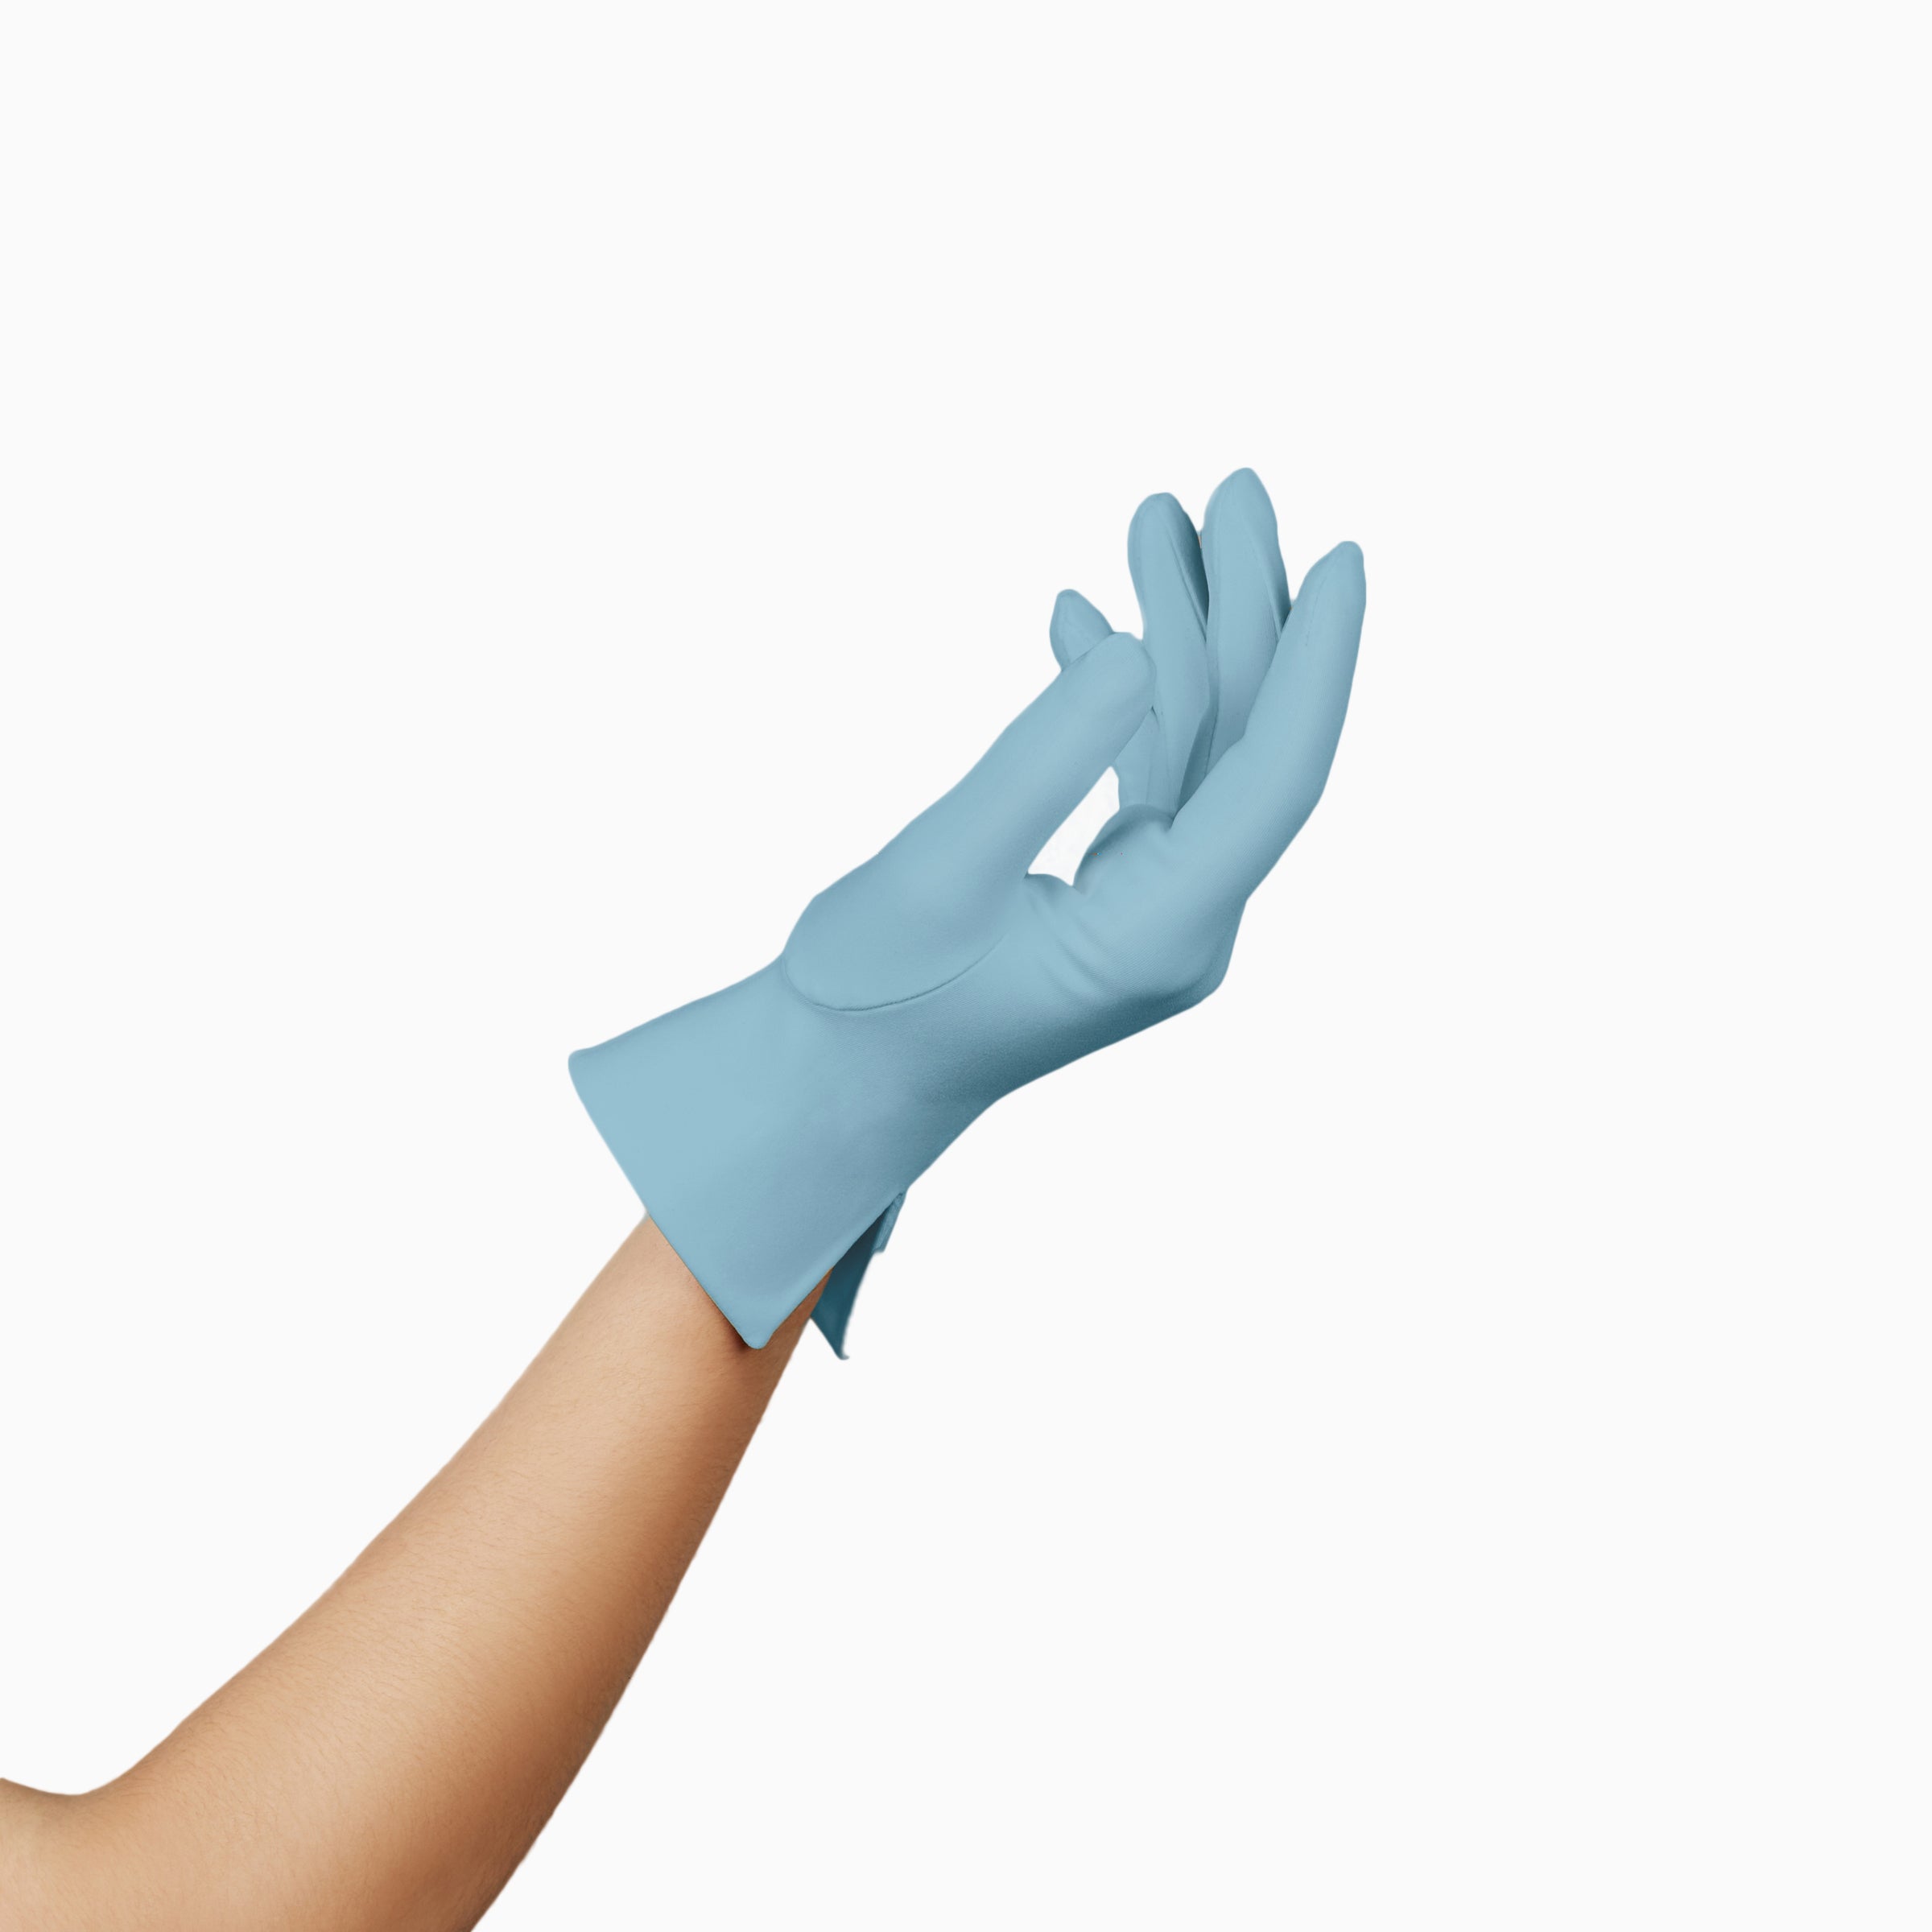 THE ISABELLE light blue women's wrist length gloves.